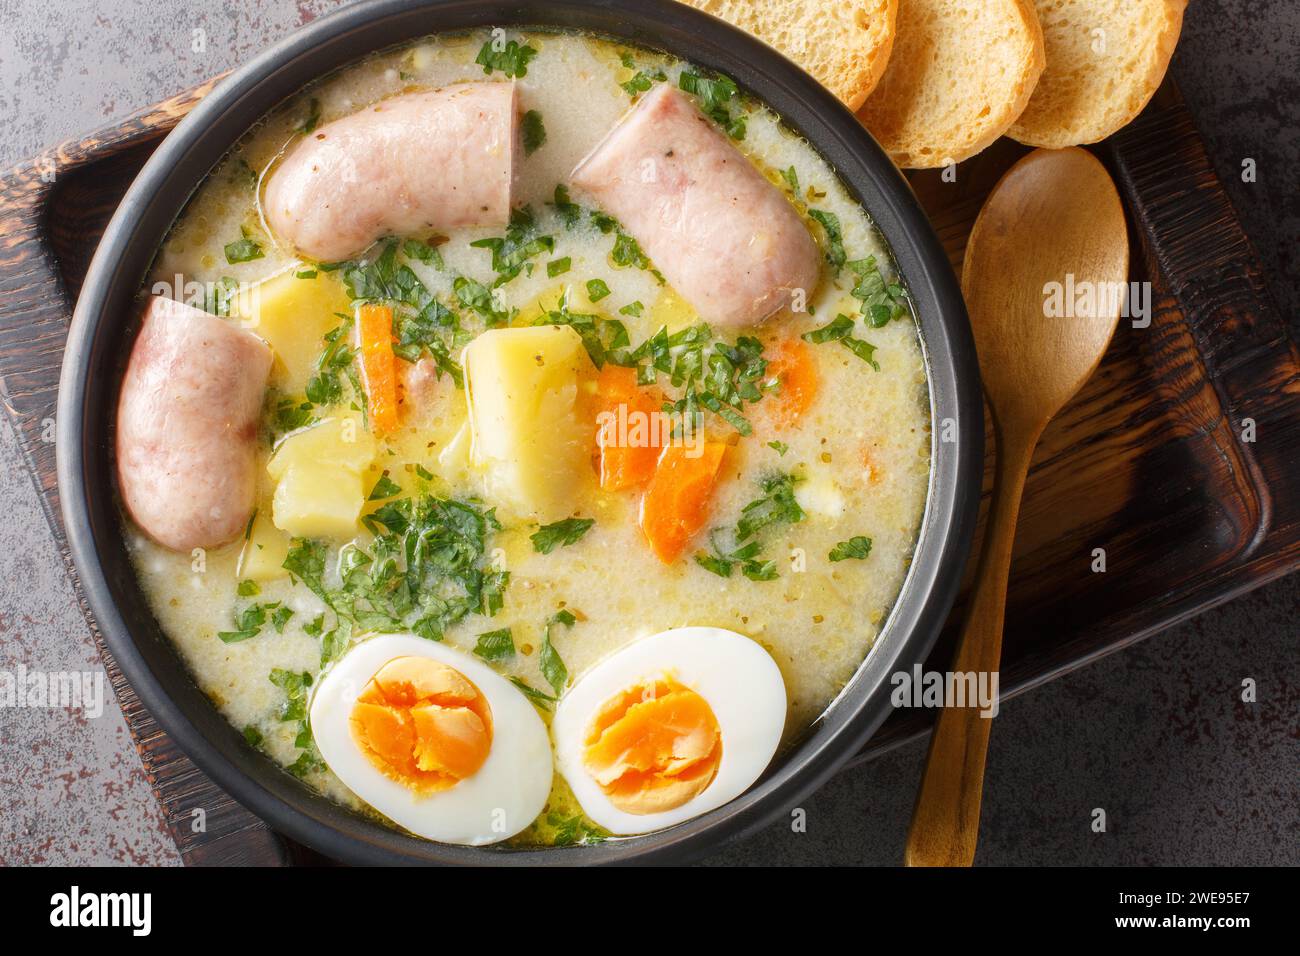 zurek polonais une soupe riche assaisonnée avec une entrée de seigle fermenté, servie avec un œuf bouilli coupé en deux et une saucisse blanche charnue en gros plan dans un bol sur la table. Banque D'Images